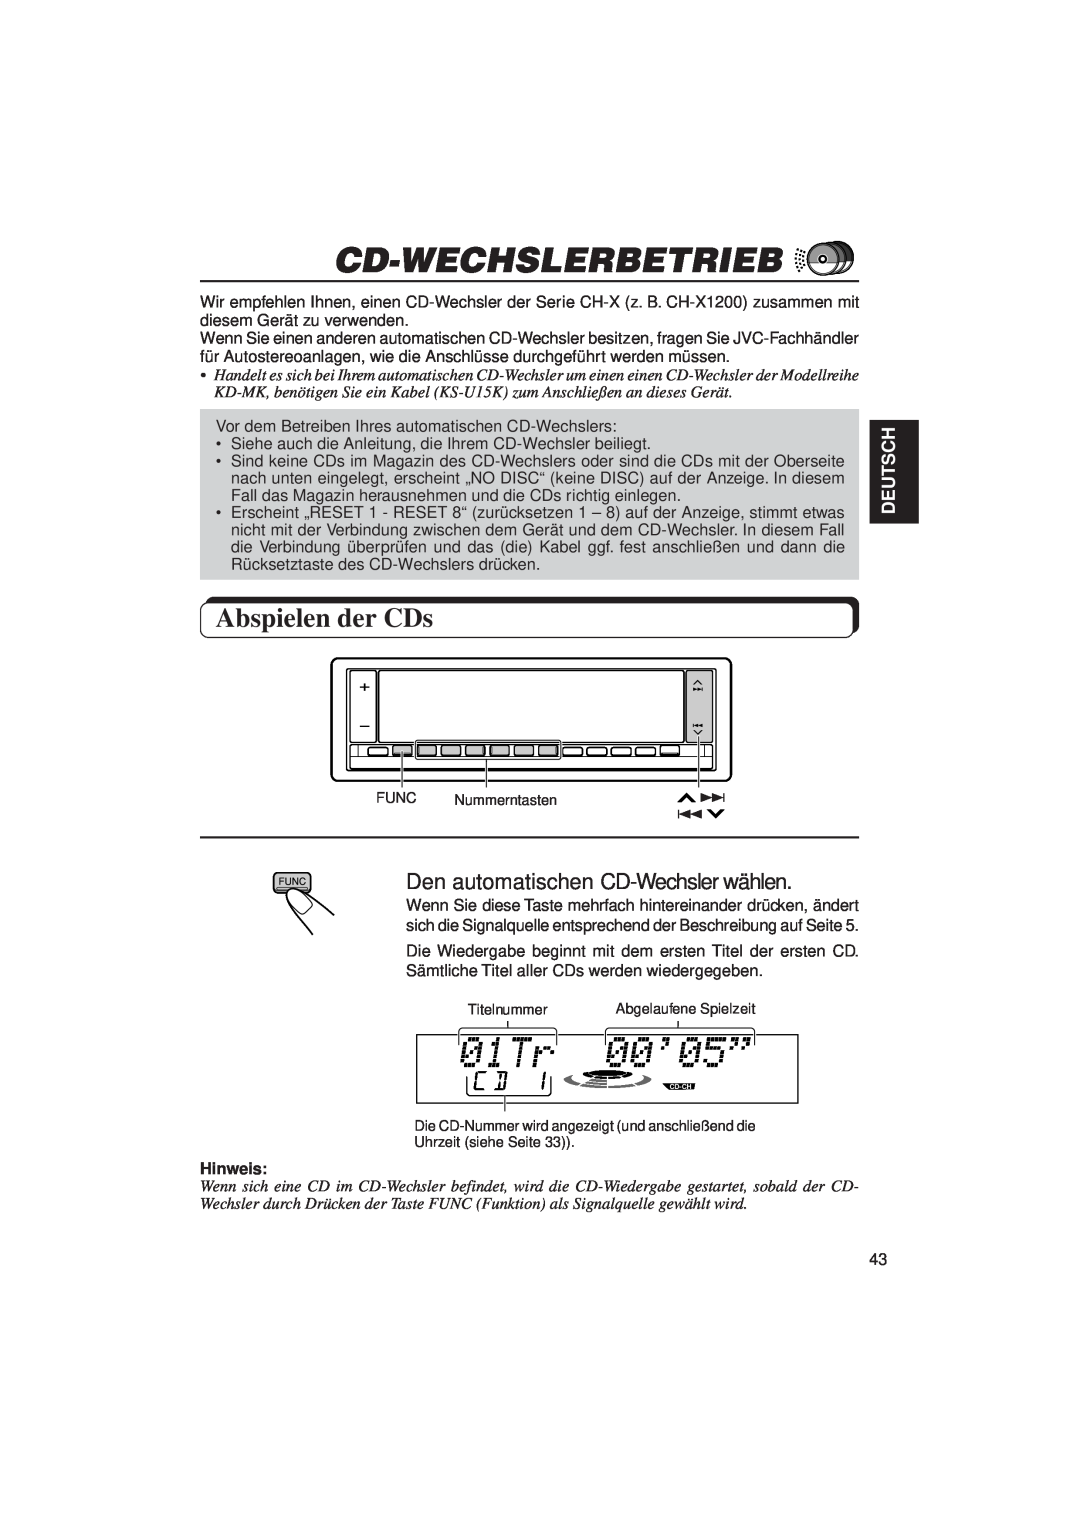 JVC KD-LX3R manual Cd-Wechslerbetrieb, Abspielen der CDs, Deutsch, Hinweis 